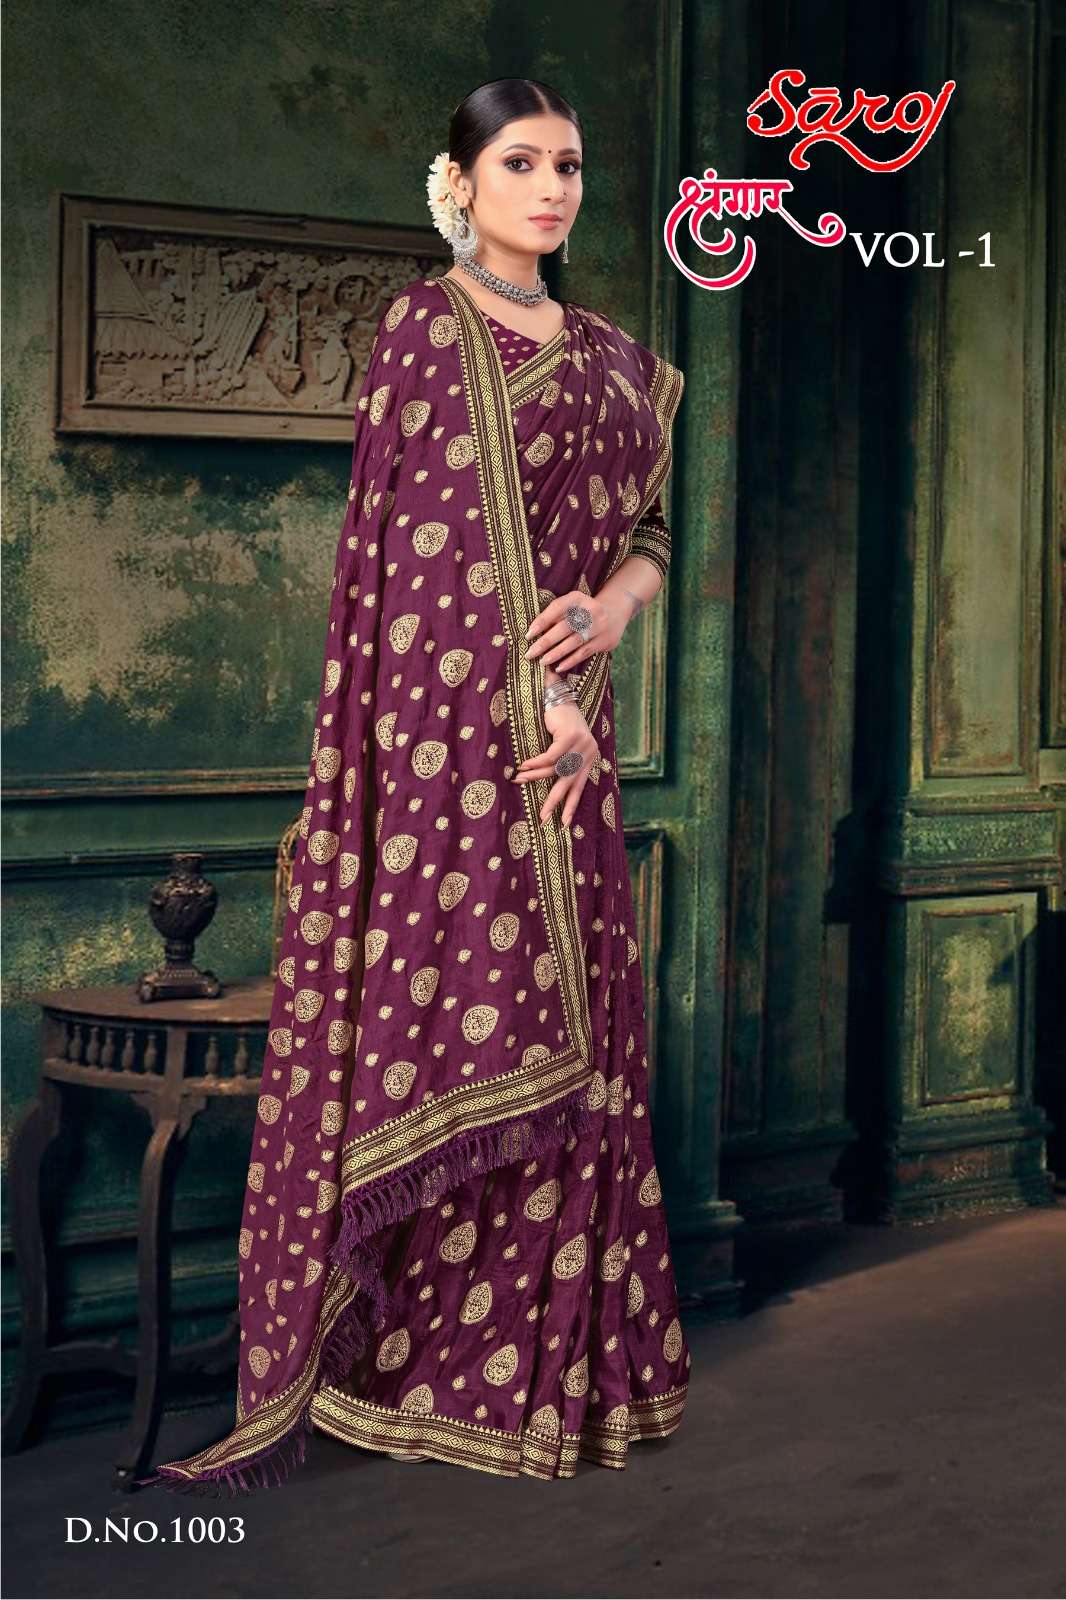 Saroj textile presents Shrungaar vol 1 casual sarees catalogue